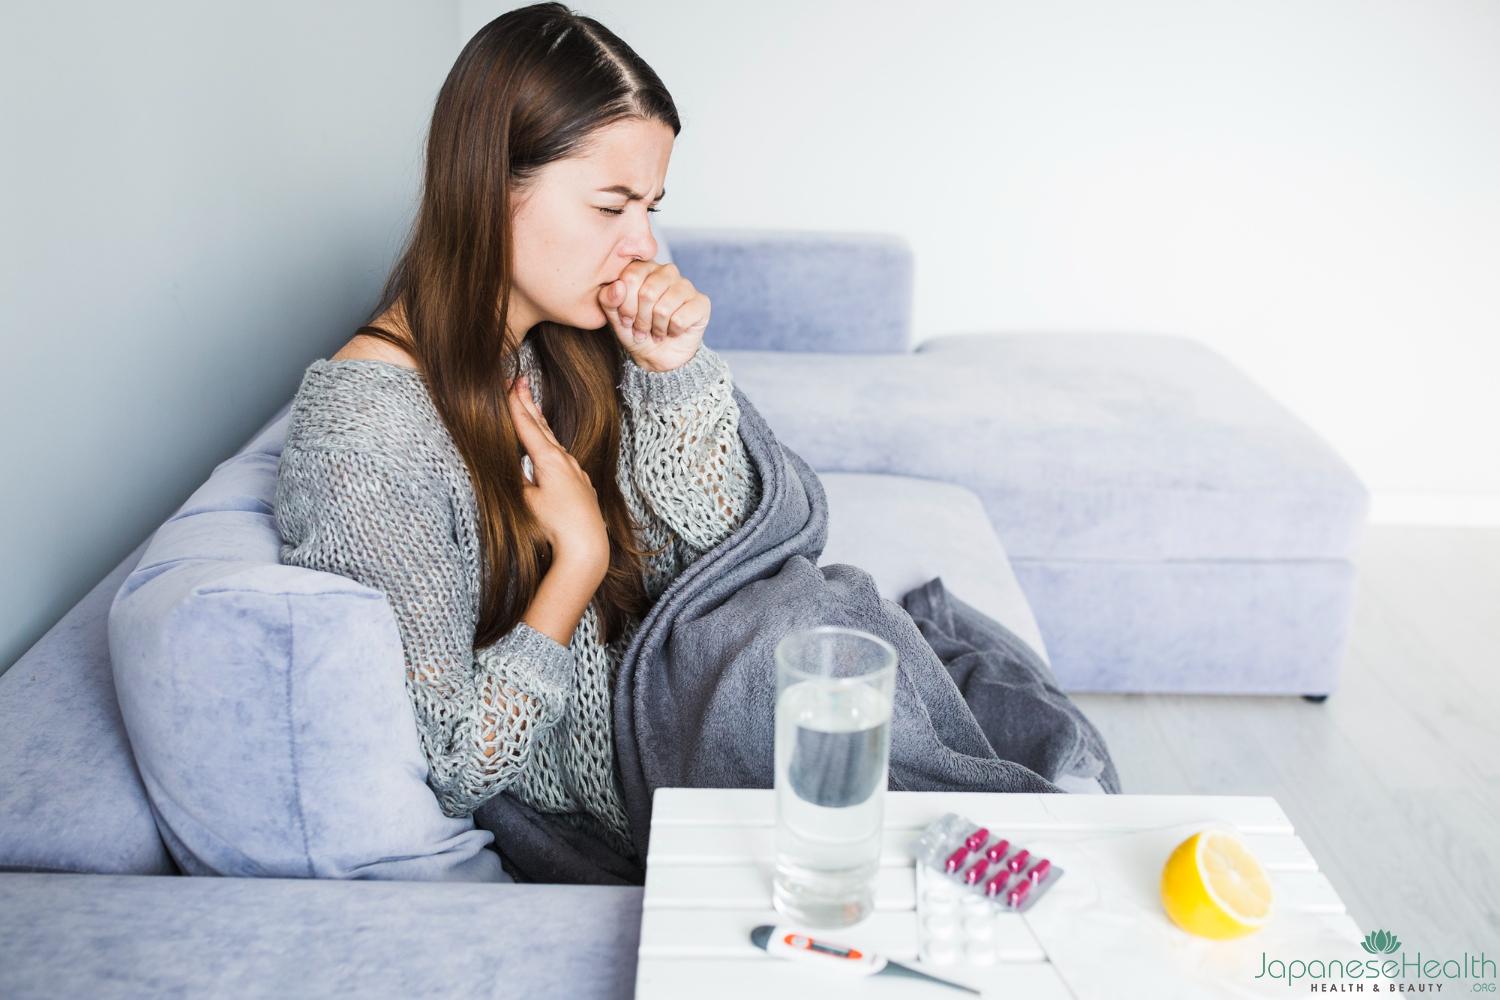 あなたは、喉の違和感や咳に悩まされたことはありませんか？実は、これらの症状は多くの人が経験する一般的な問題です。